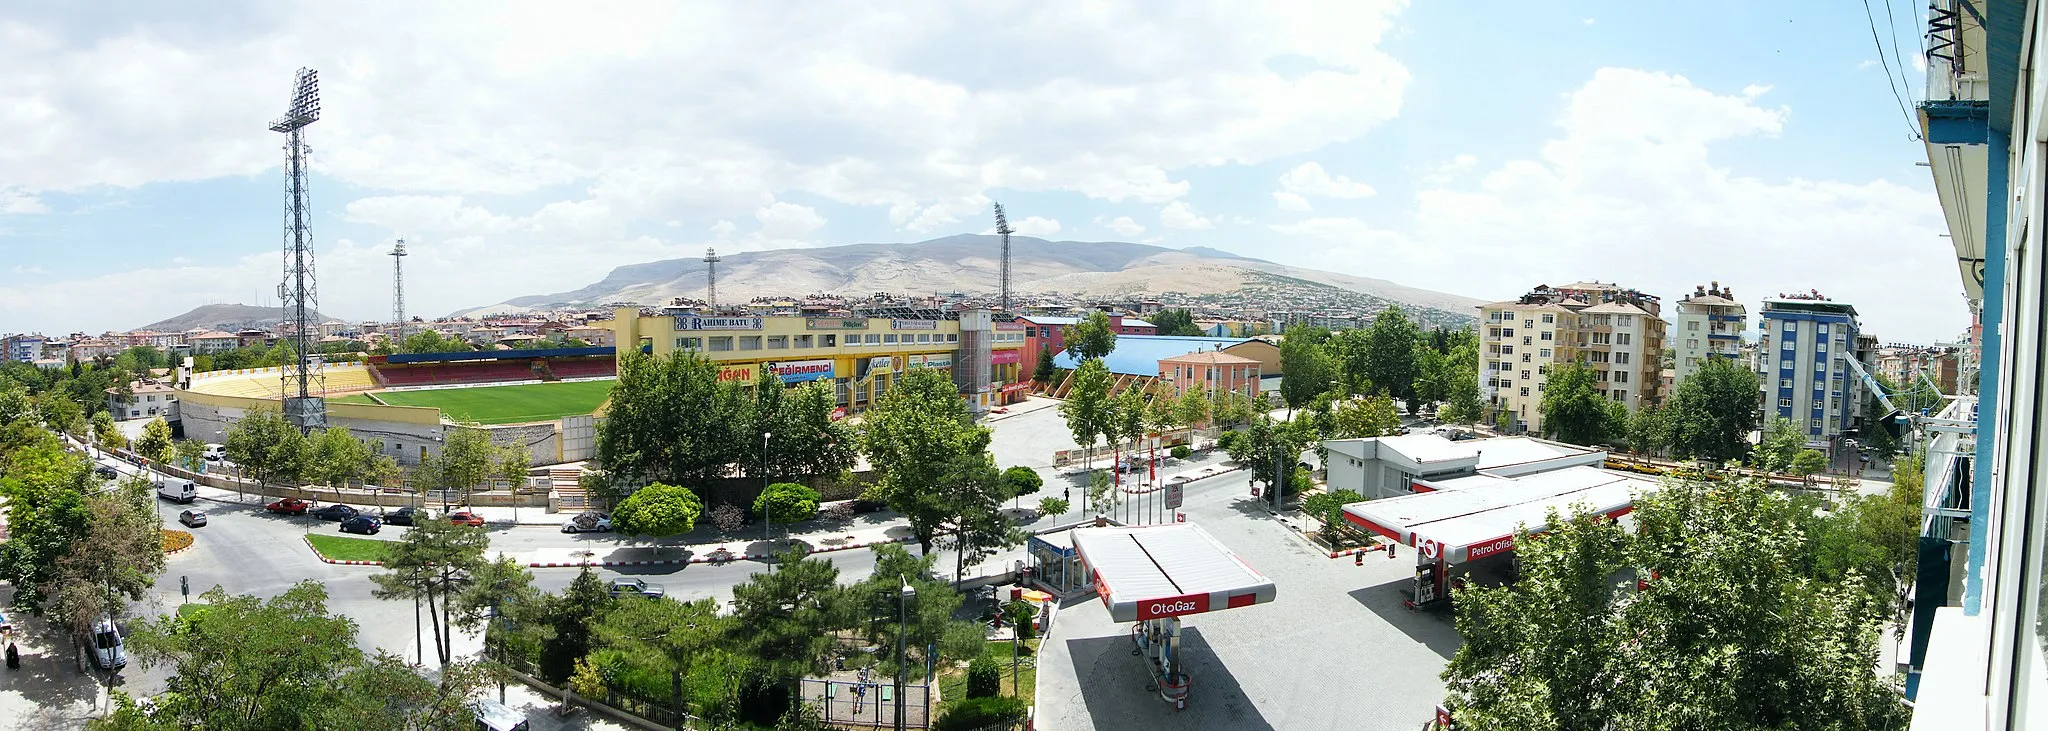 Image of Malatya, Elazığ, Bingöl, Tunceli